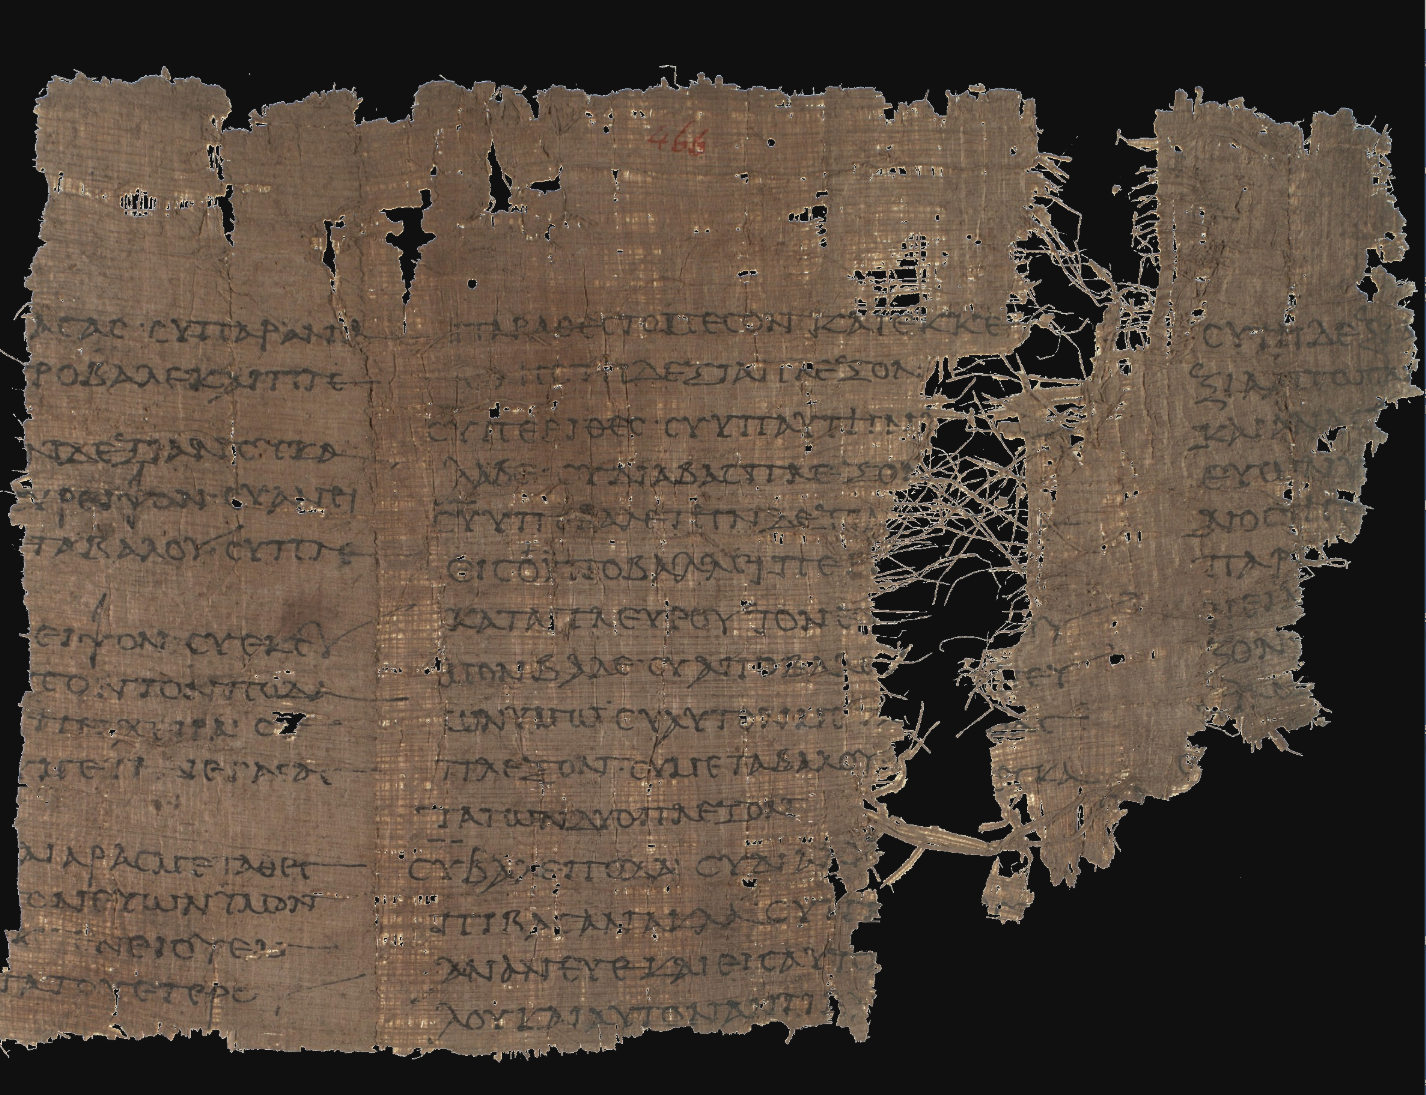 Papyrus Oxyrhynchus III 466.